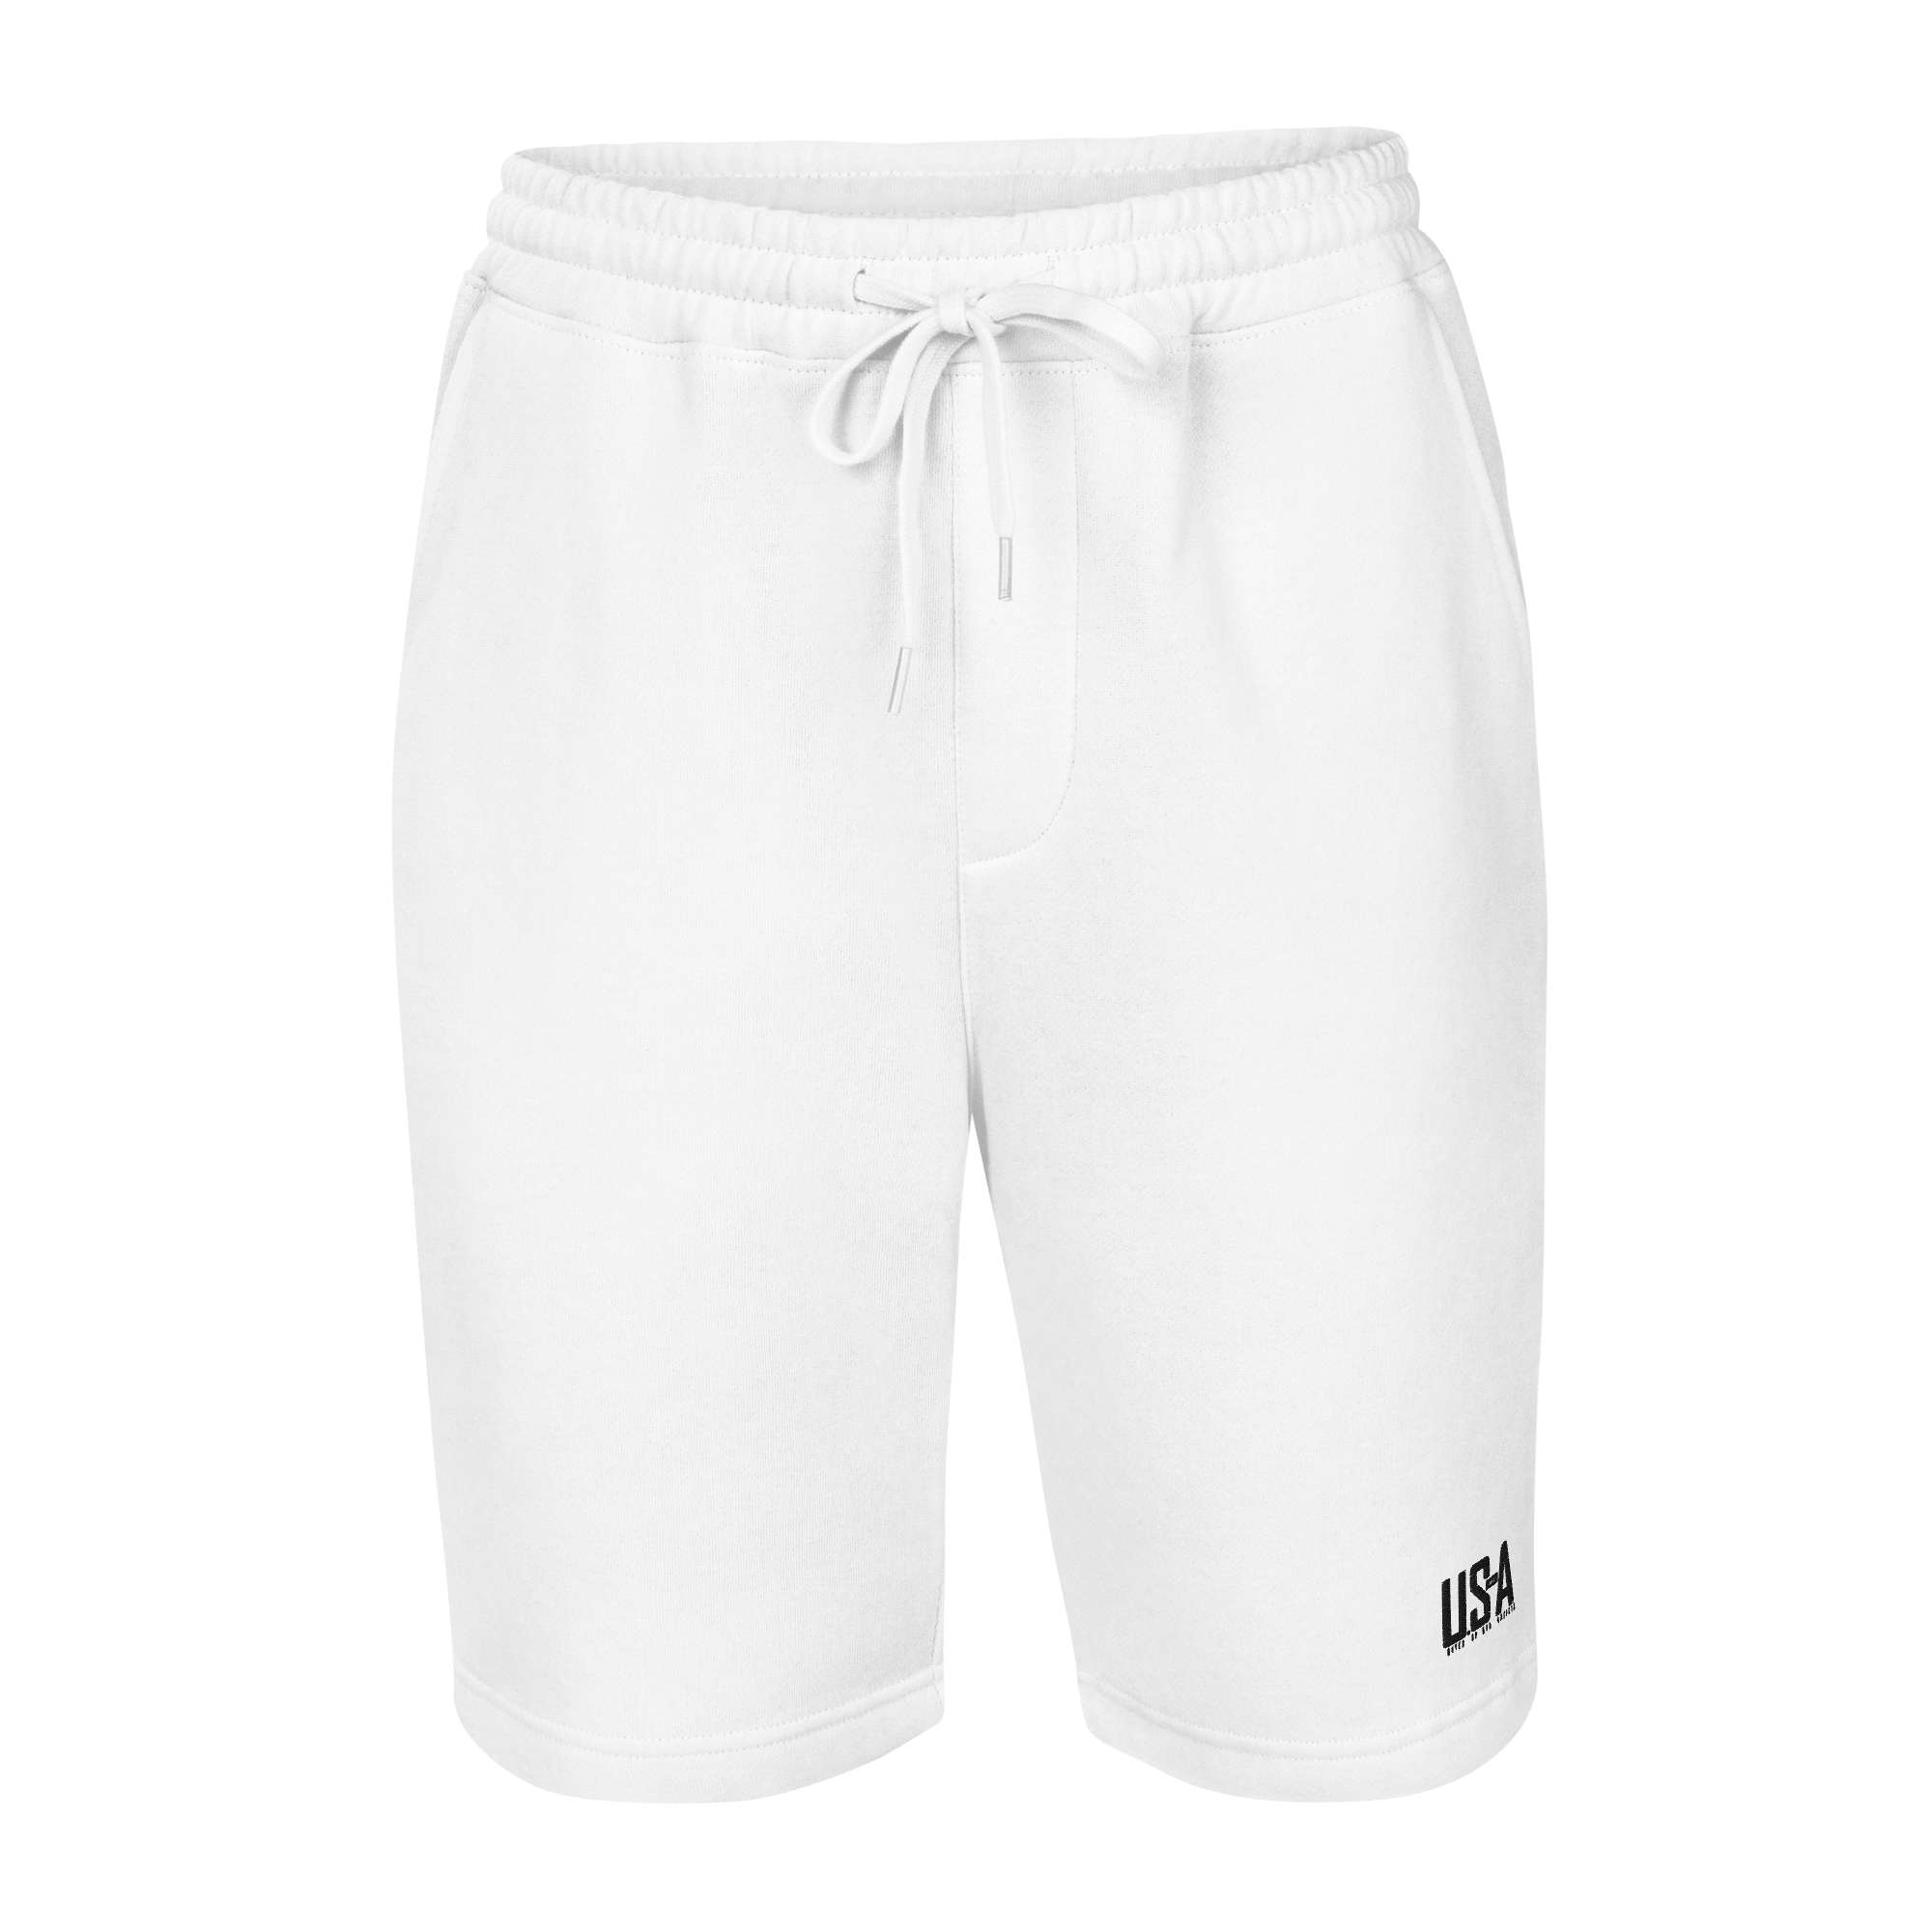 Men's fleece shorts - white